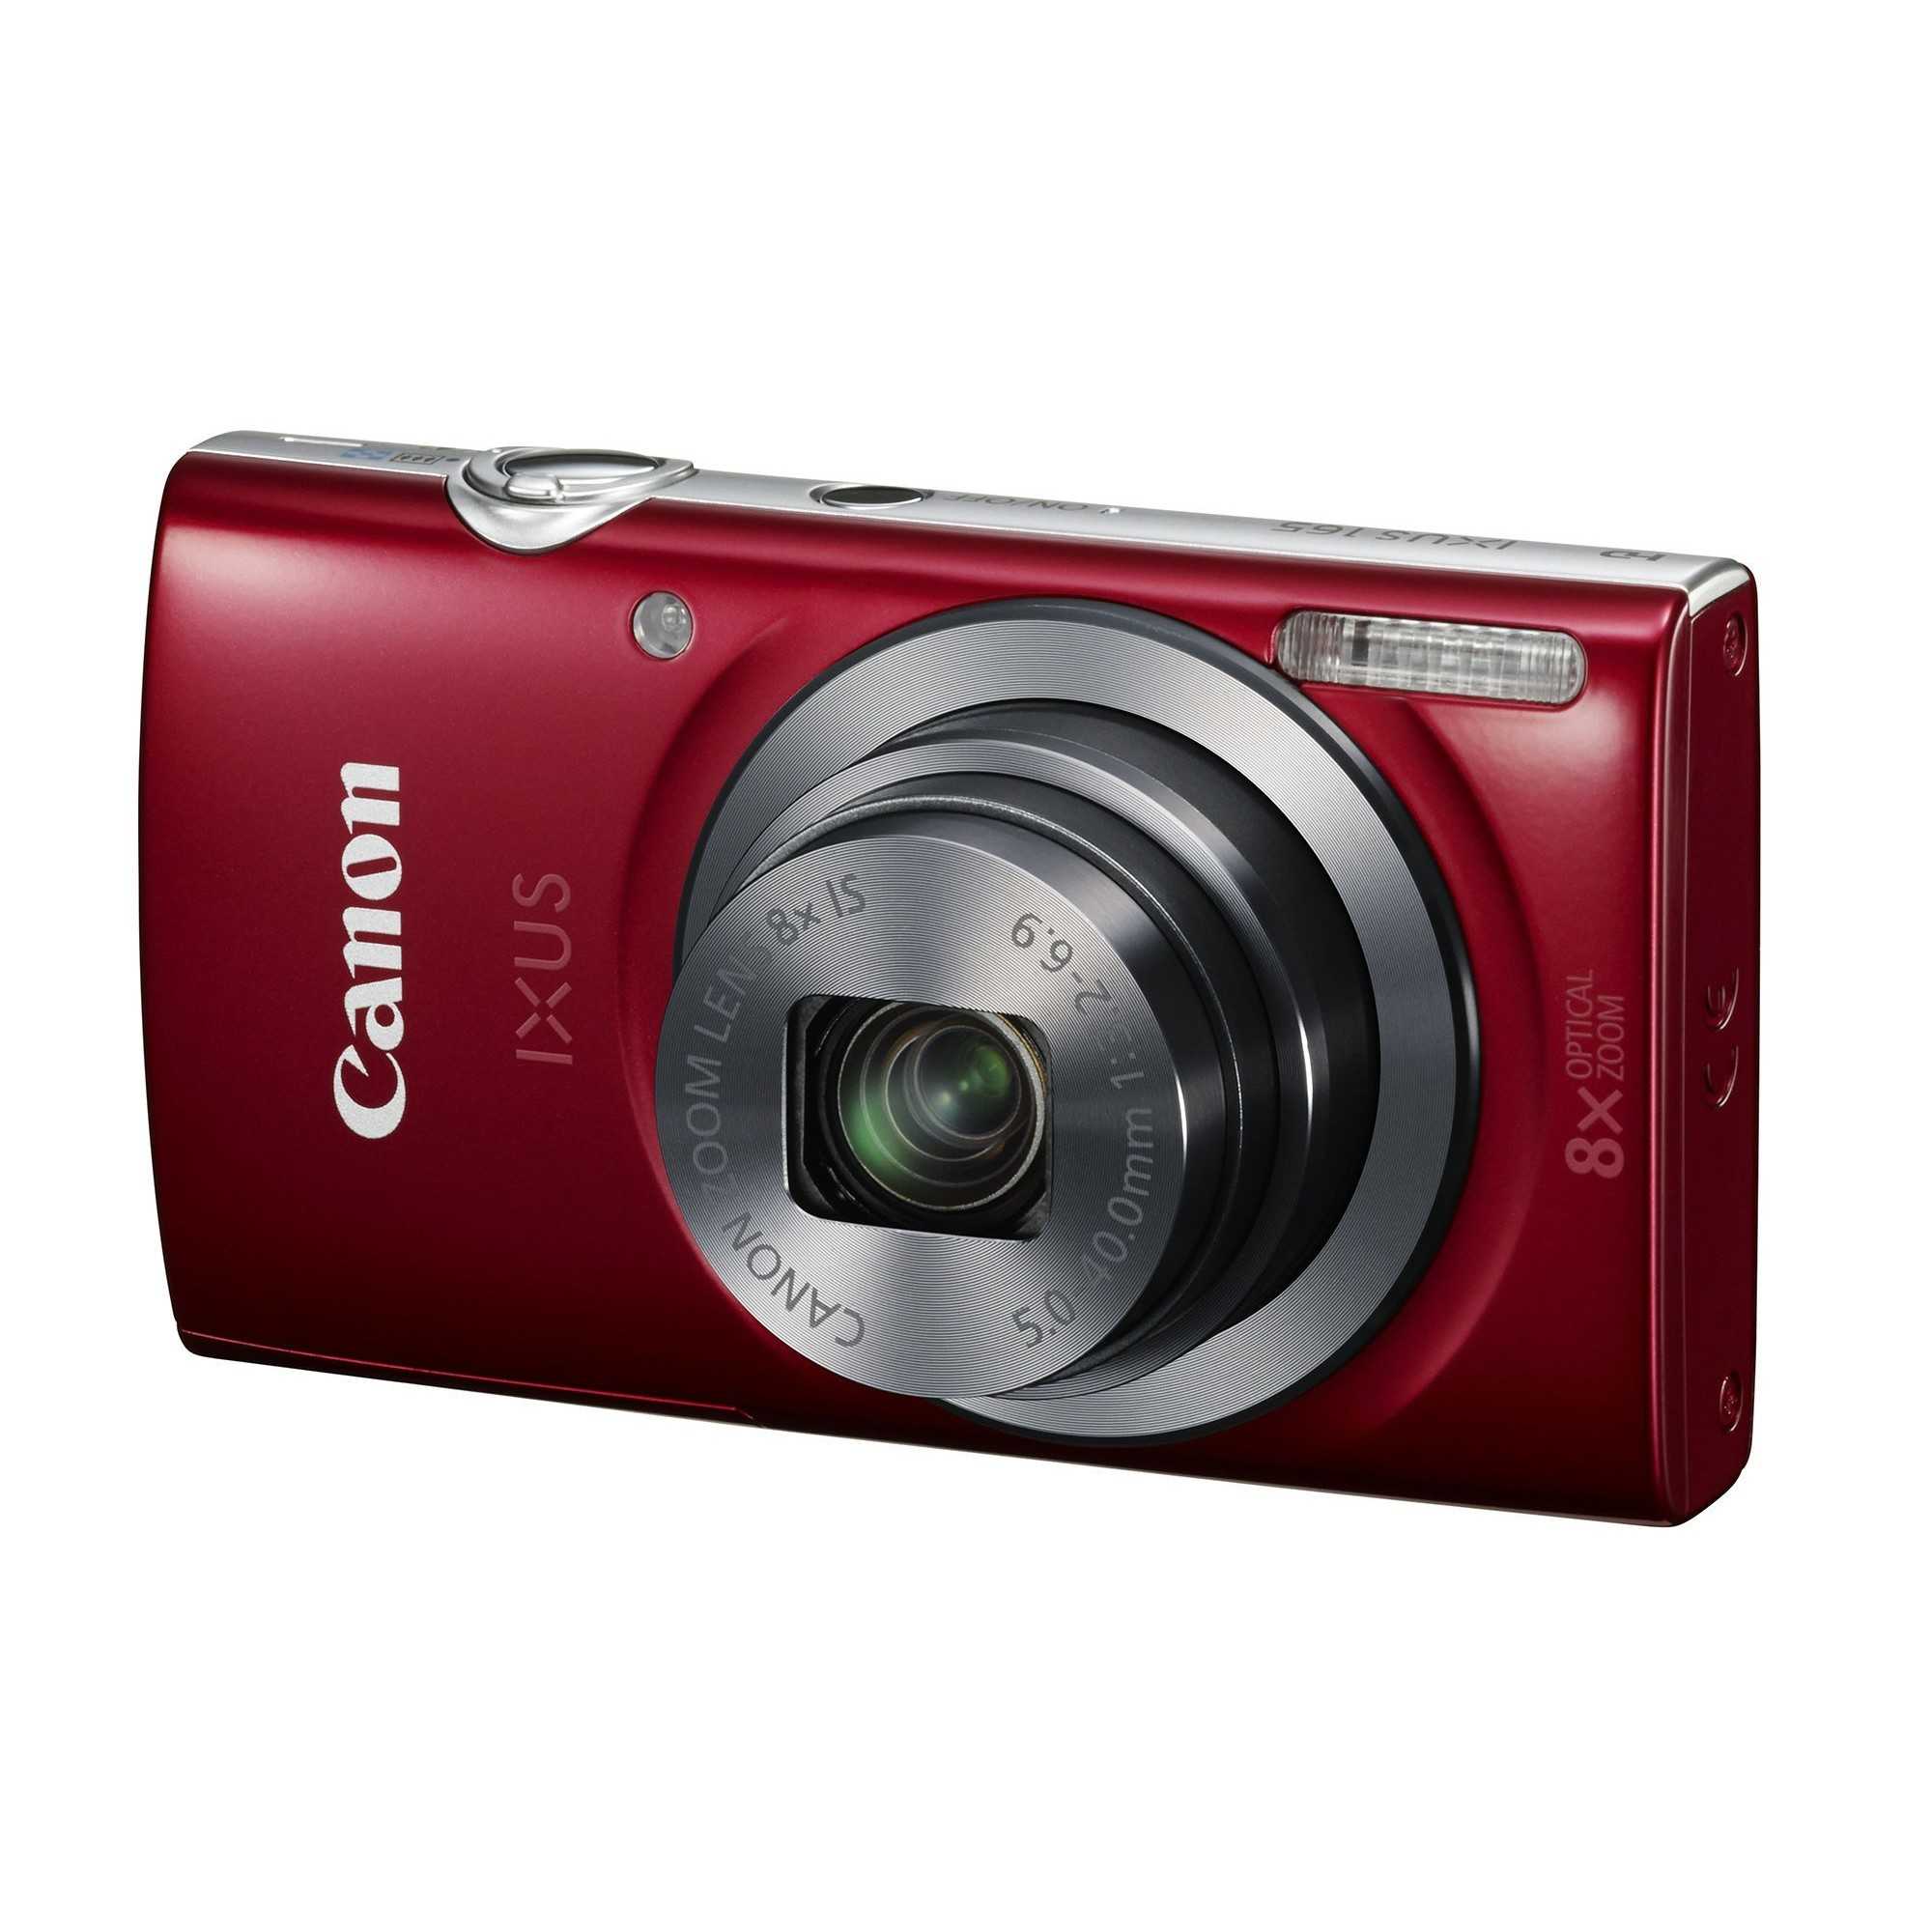 Canon digital ixus 155 (синий) - купить , скидки, цена, отзывы, обзор, характеристики - фотоаппараты цифровые